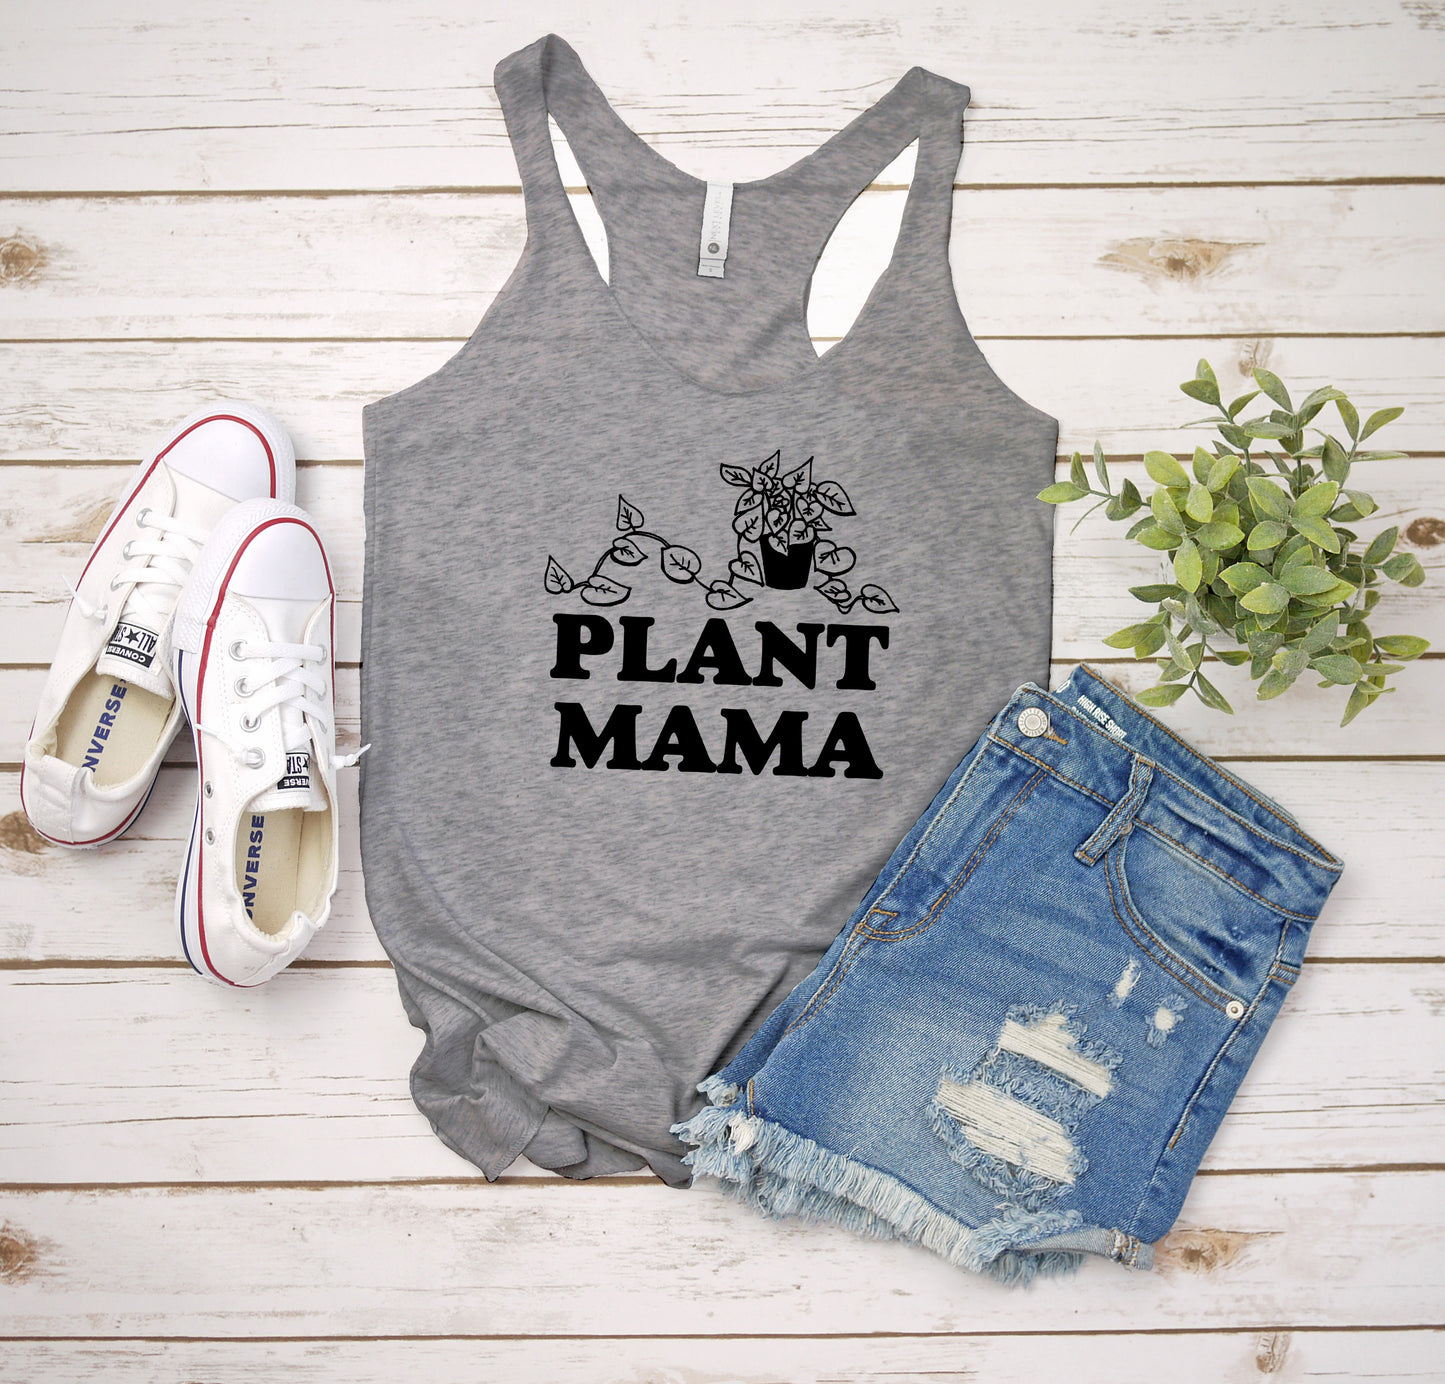 Plant Mama - Women's Tank - Heather Gray, Tahiti, or Envy